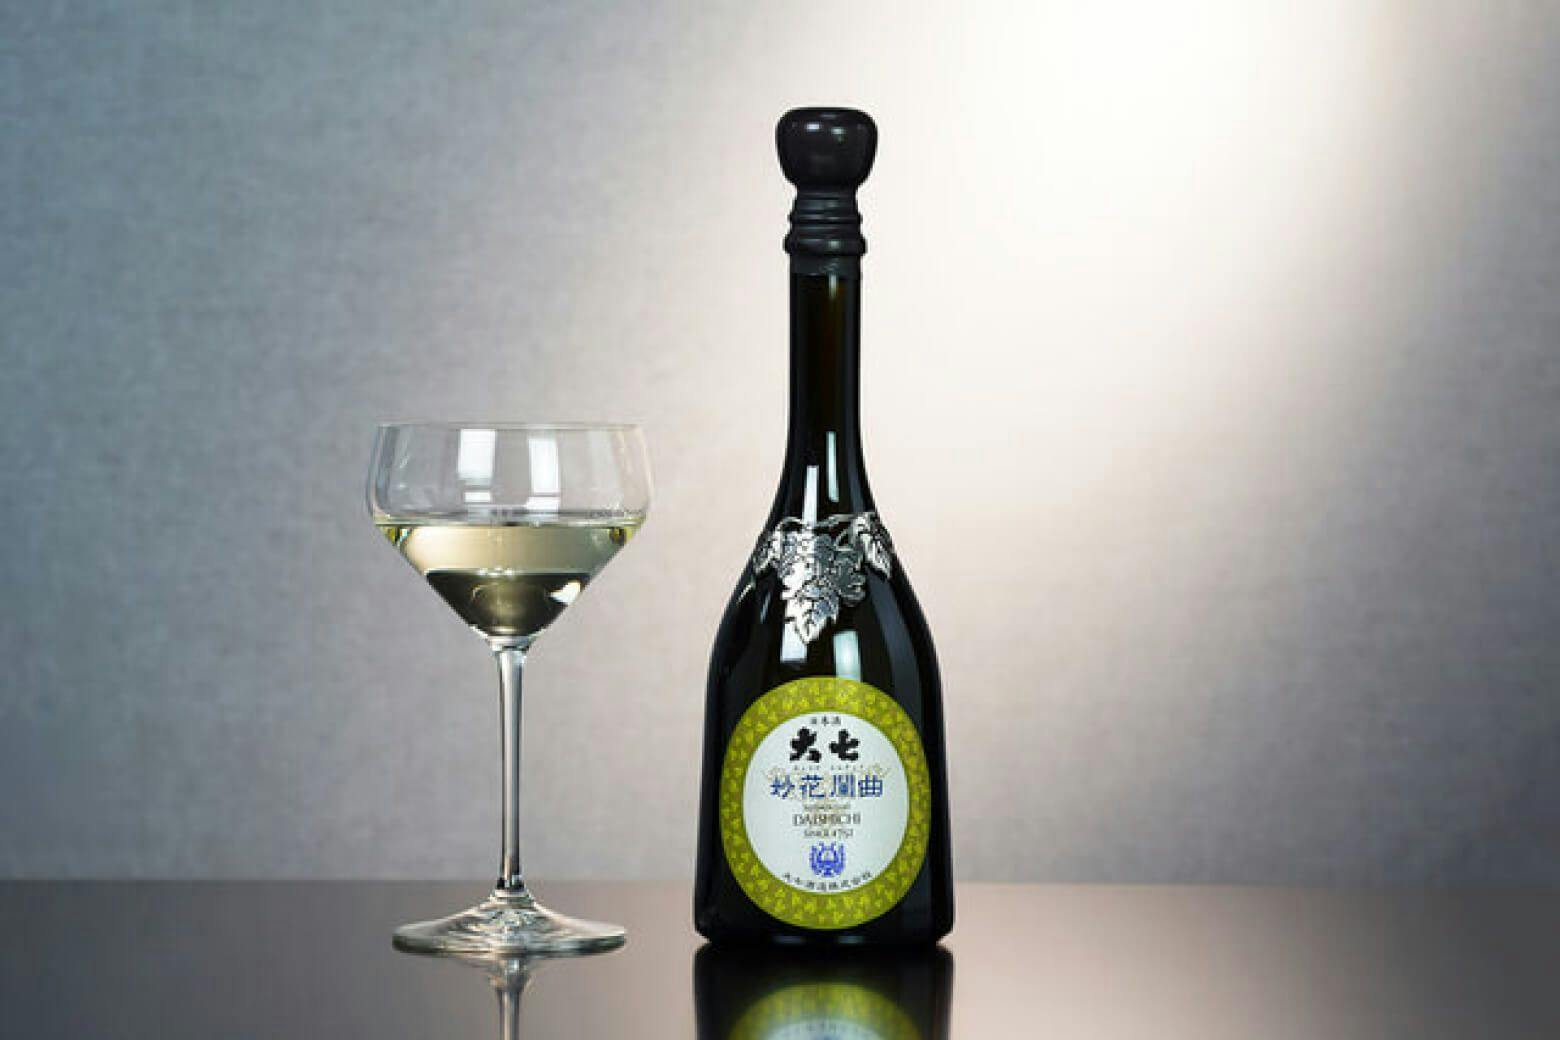 Daishichi “Myoka Rangyoku” uses bottles made with venetian glass